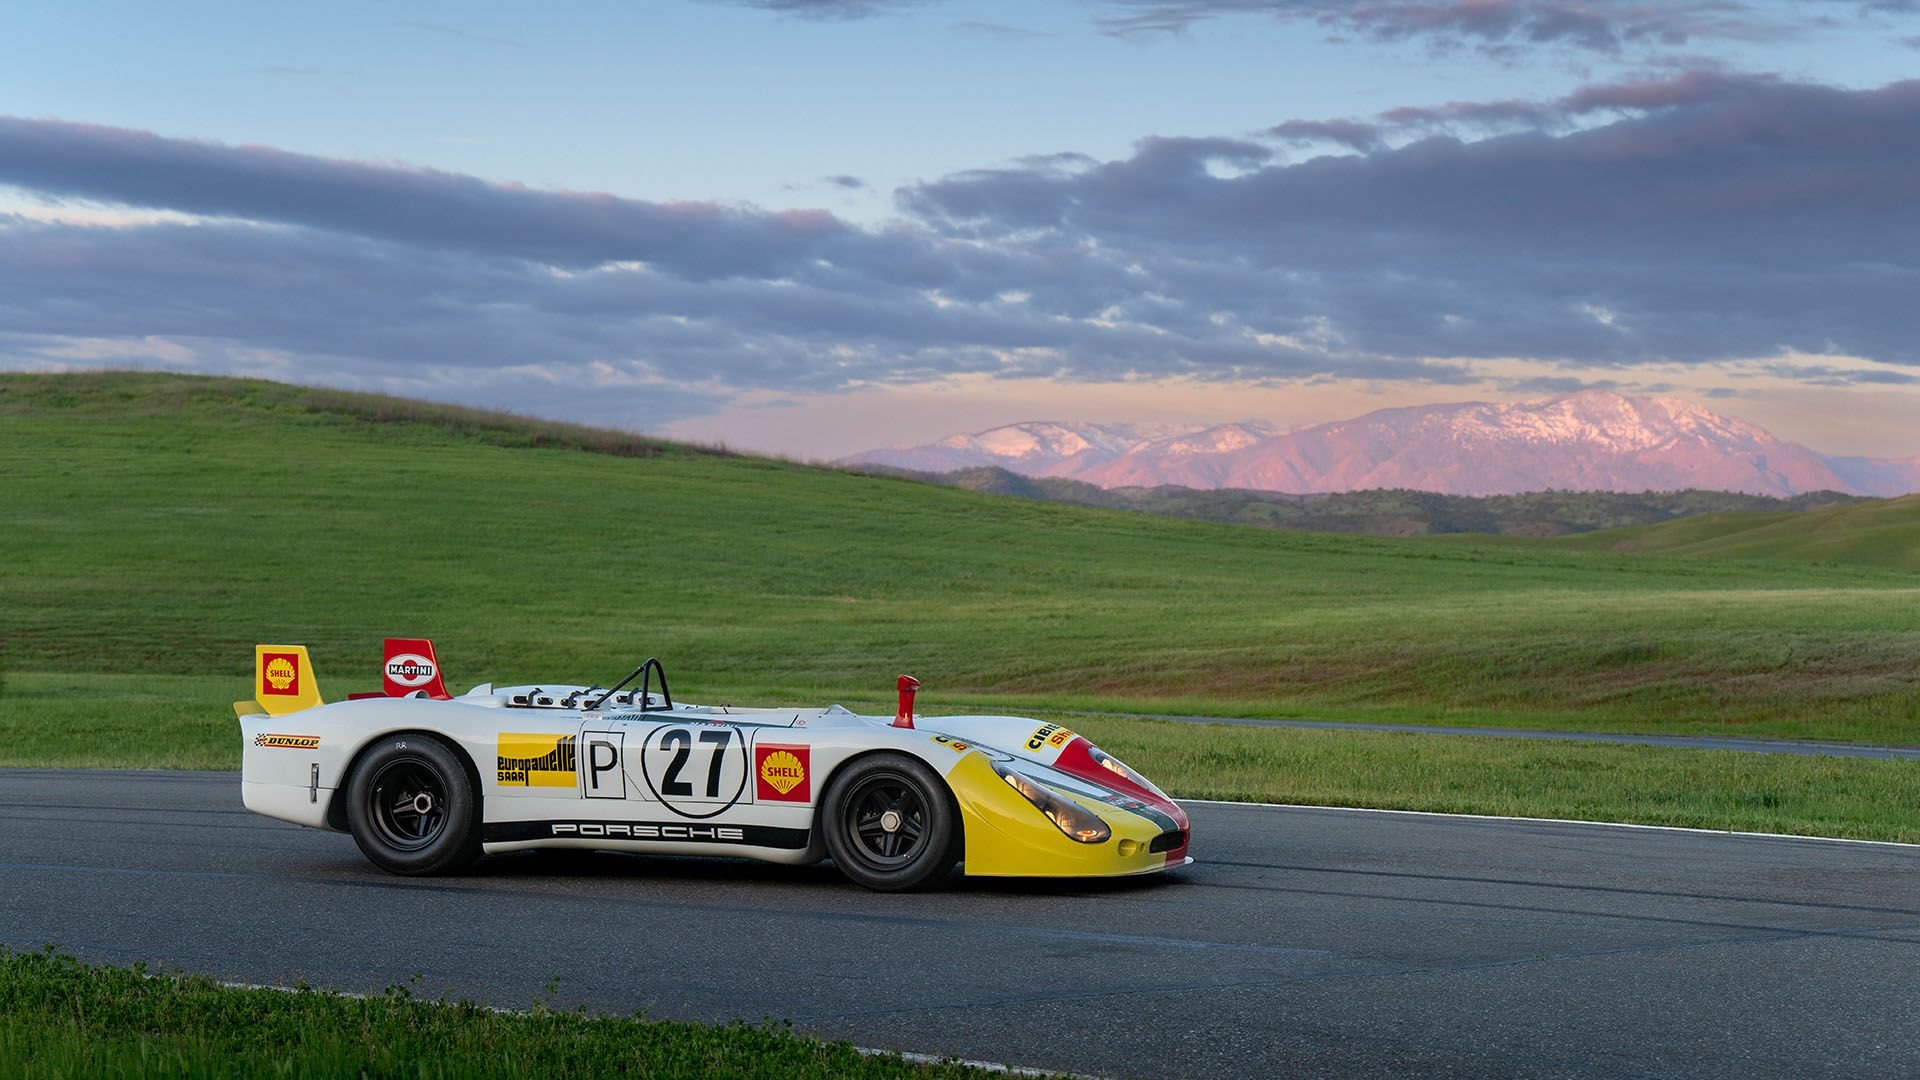 For Sale 1969 Porsche 908/02 Langheck “Flunder” Spyder